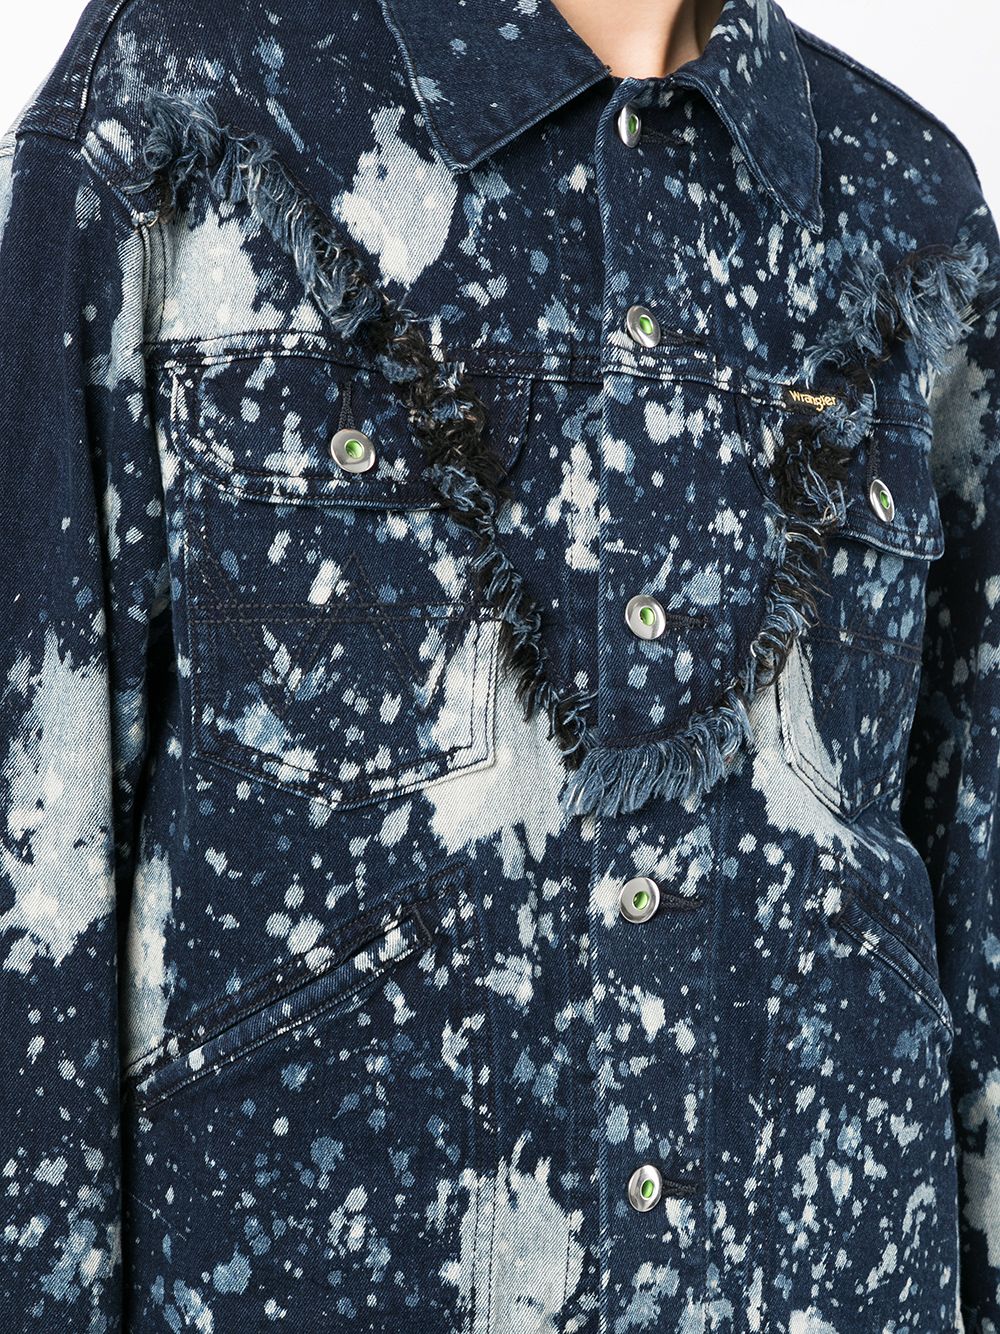 фото Sankuanz джинсовая куртка с эффектом разбрызганной краски